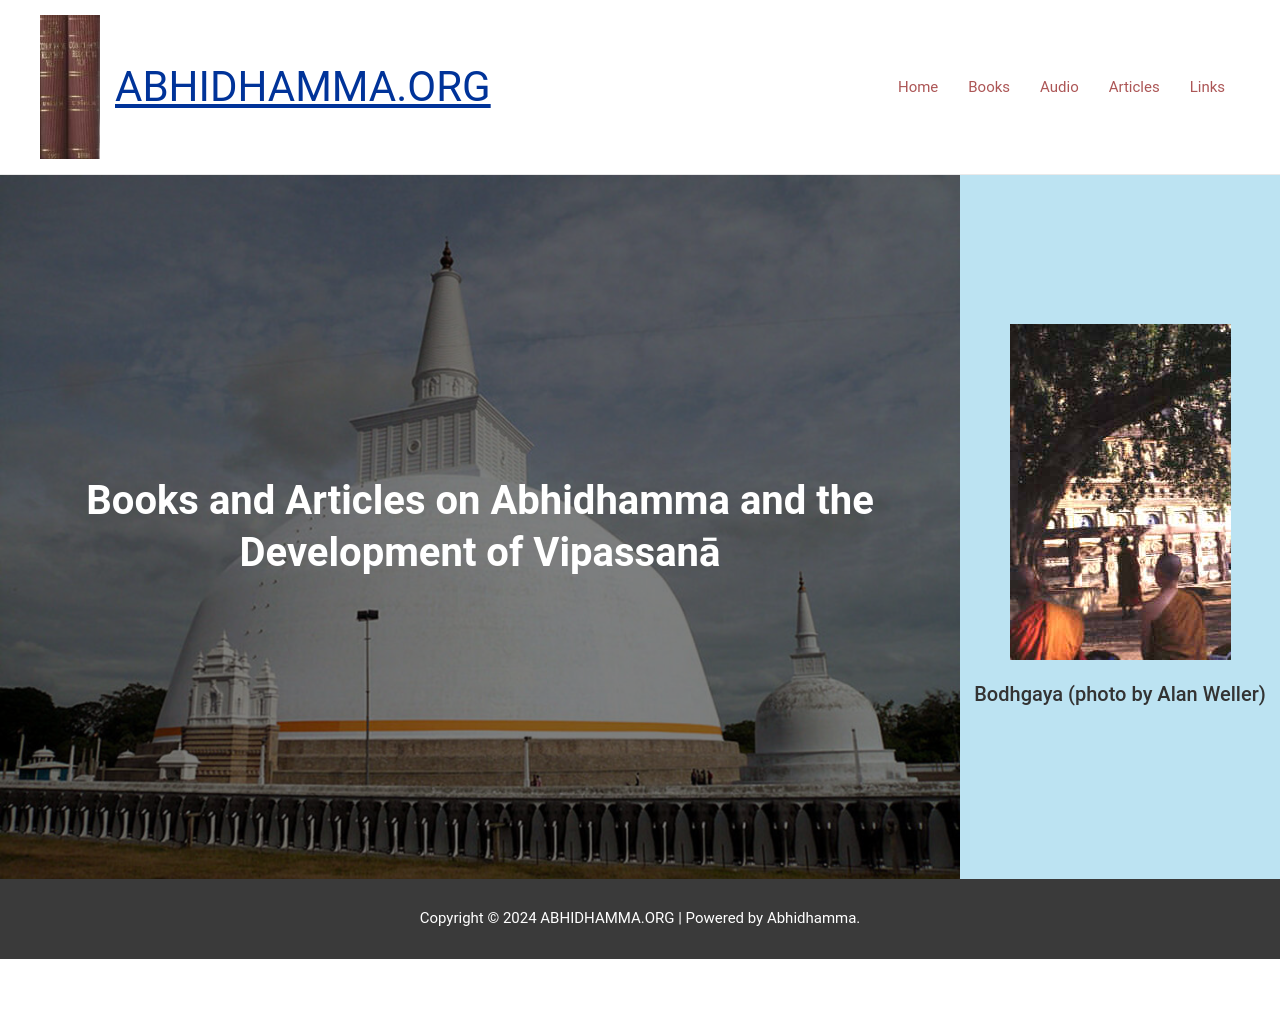 abhidhamma.org